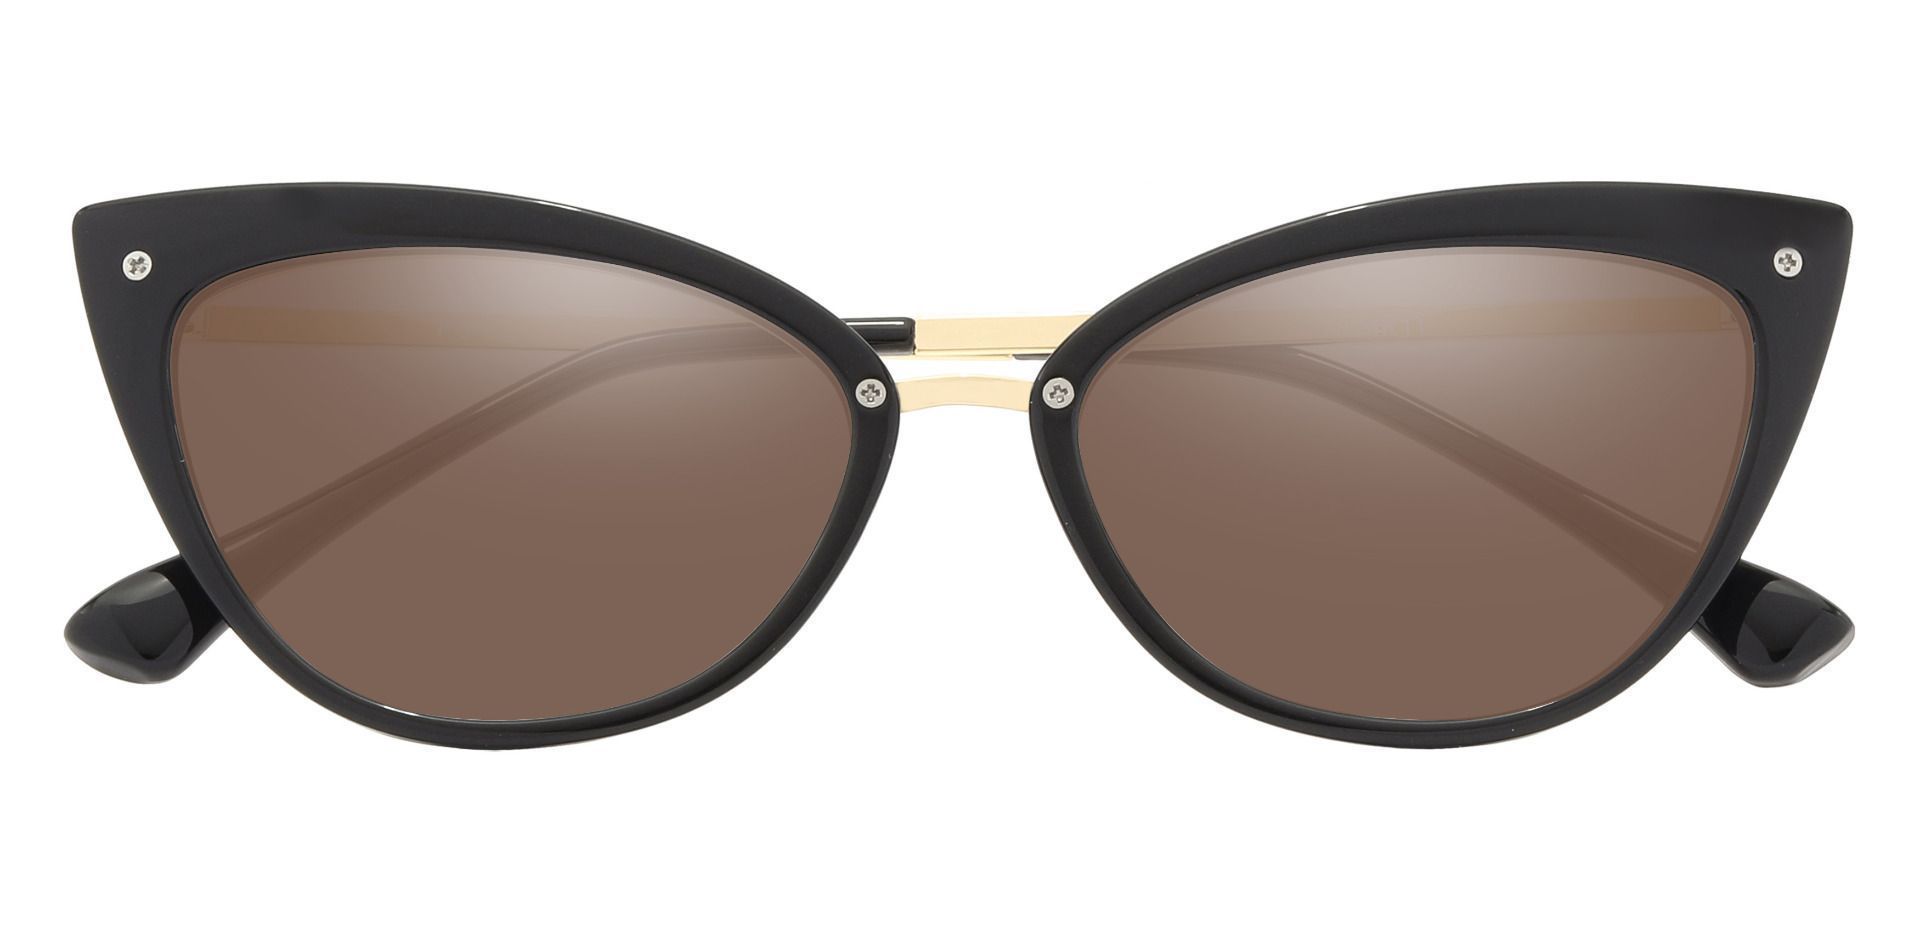 Glenda Cat Eye Prescription Sunglasses - Black Frame With Brown Lenses